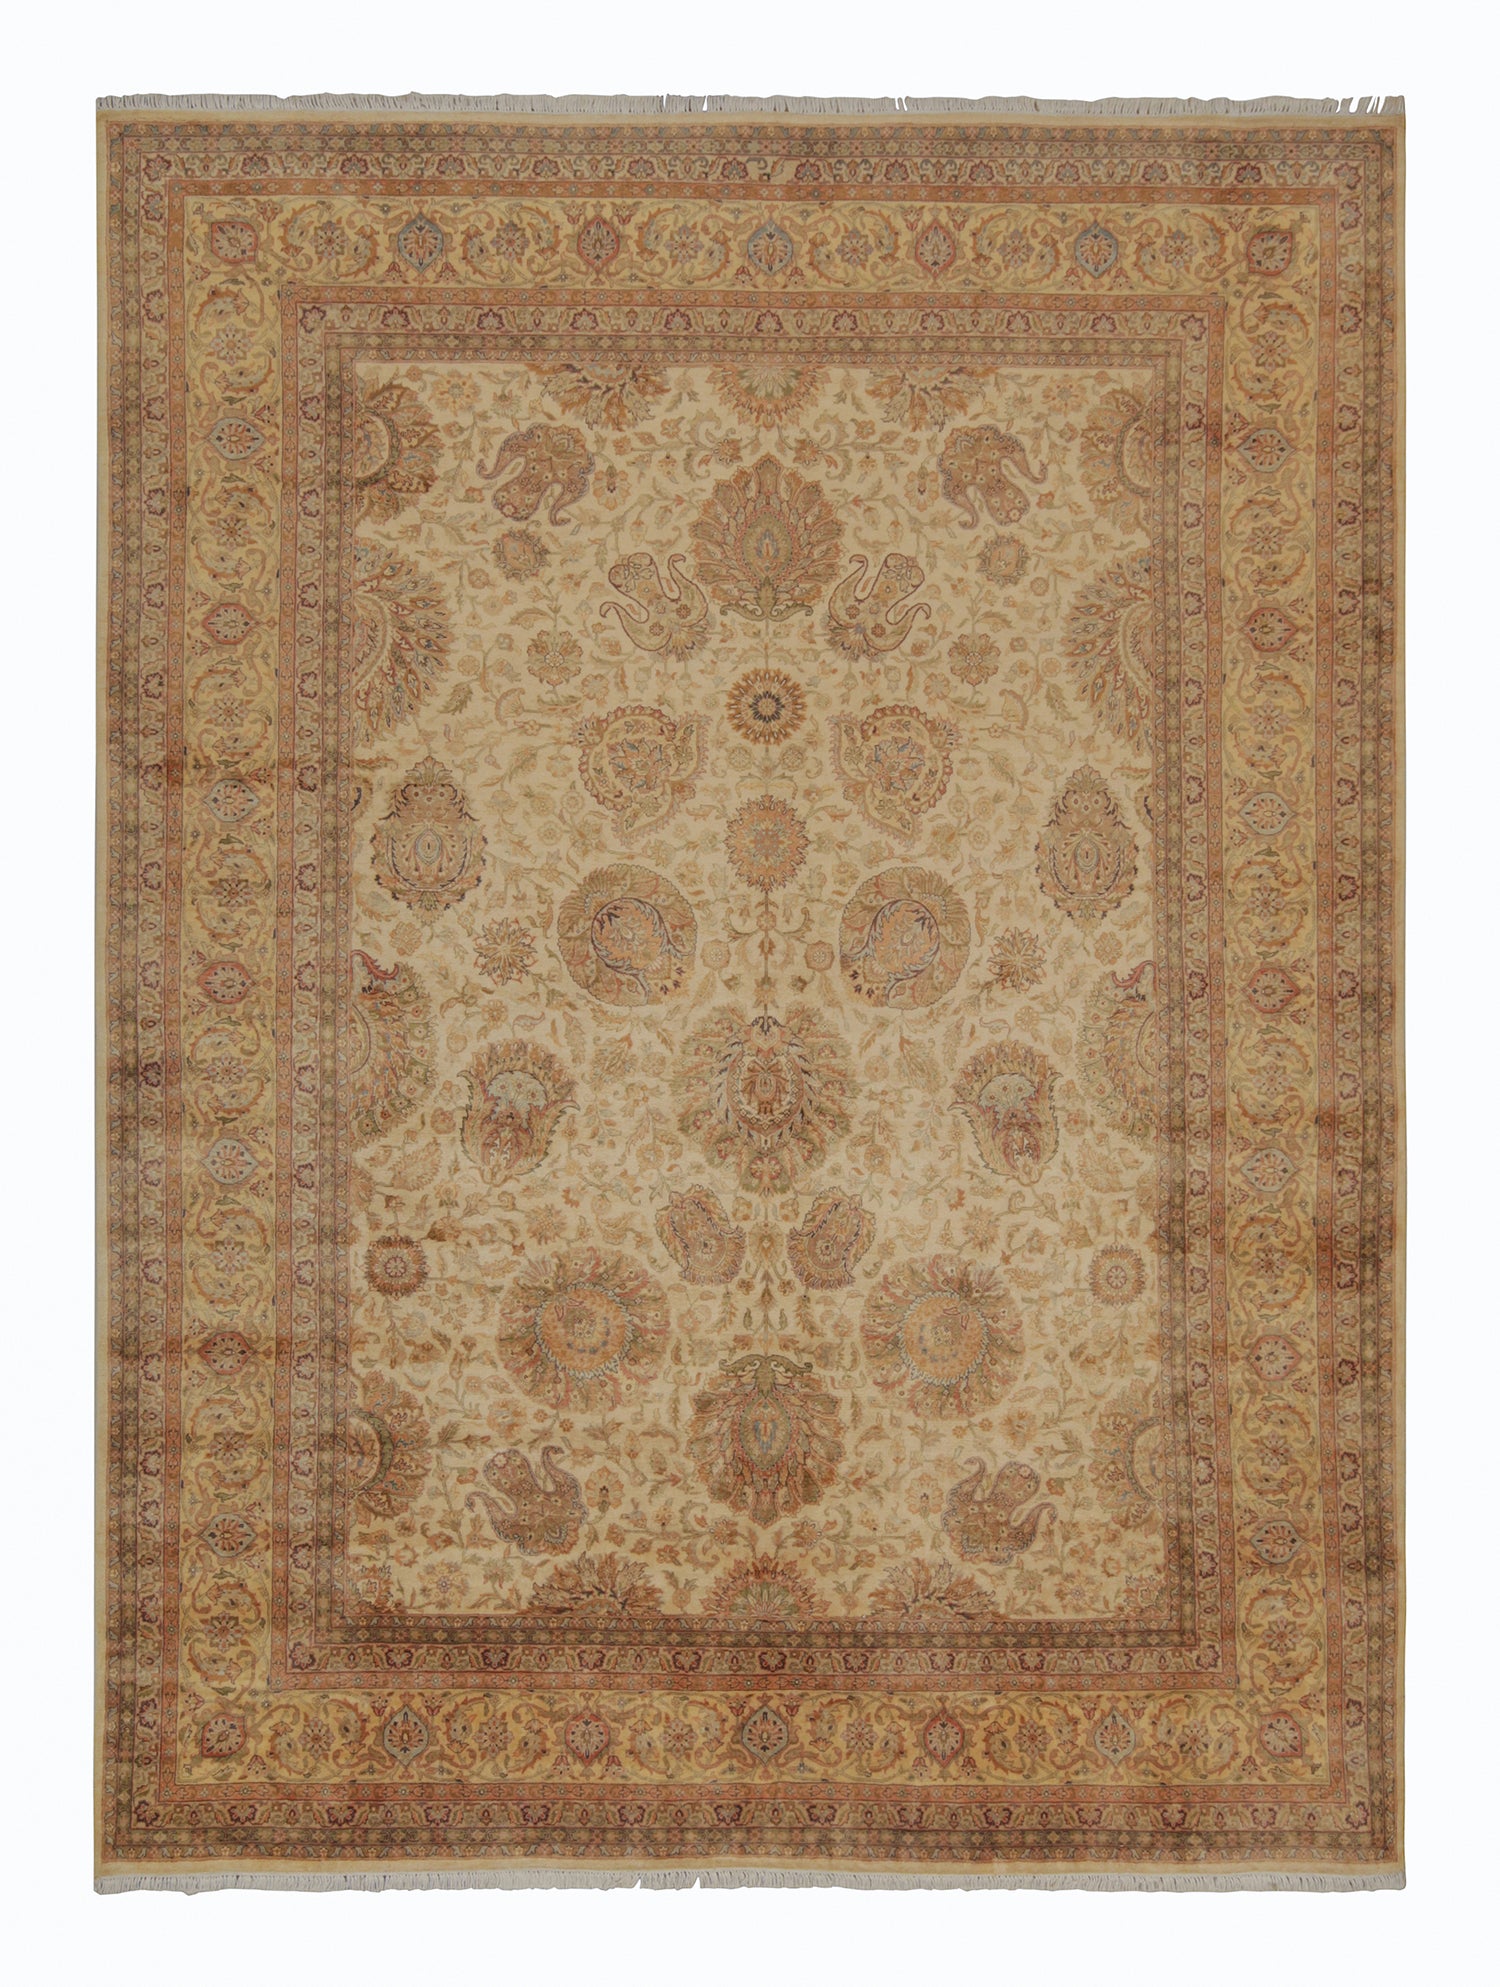 Teppich & Kelim-Teppich im persischen Stil mit goldfarbenem und beige-braunem Blumenmuster